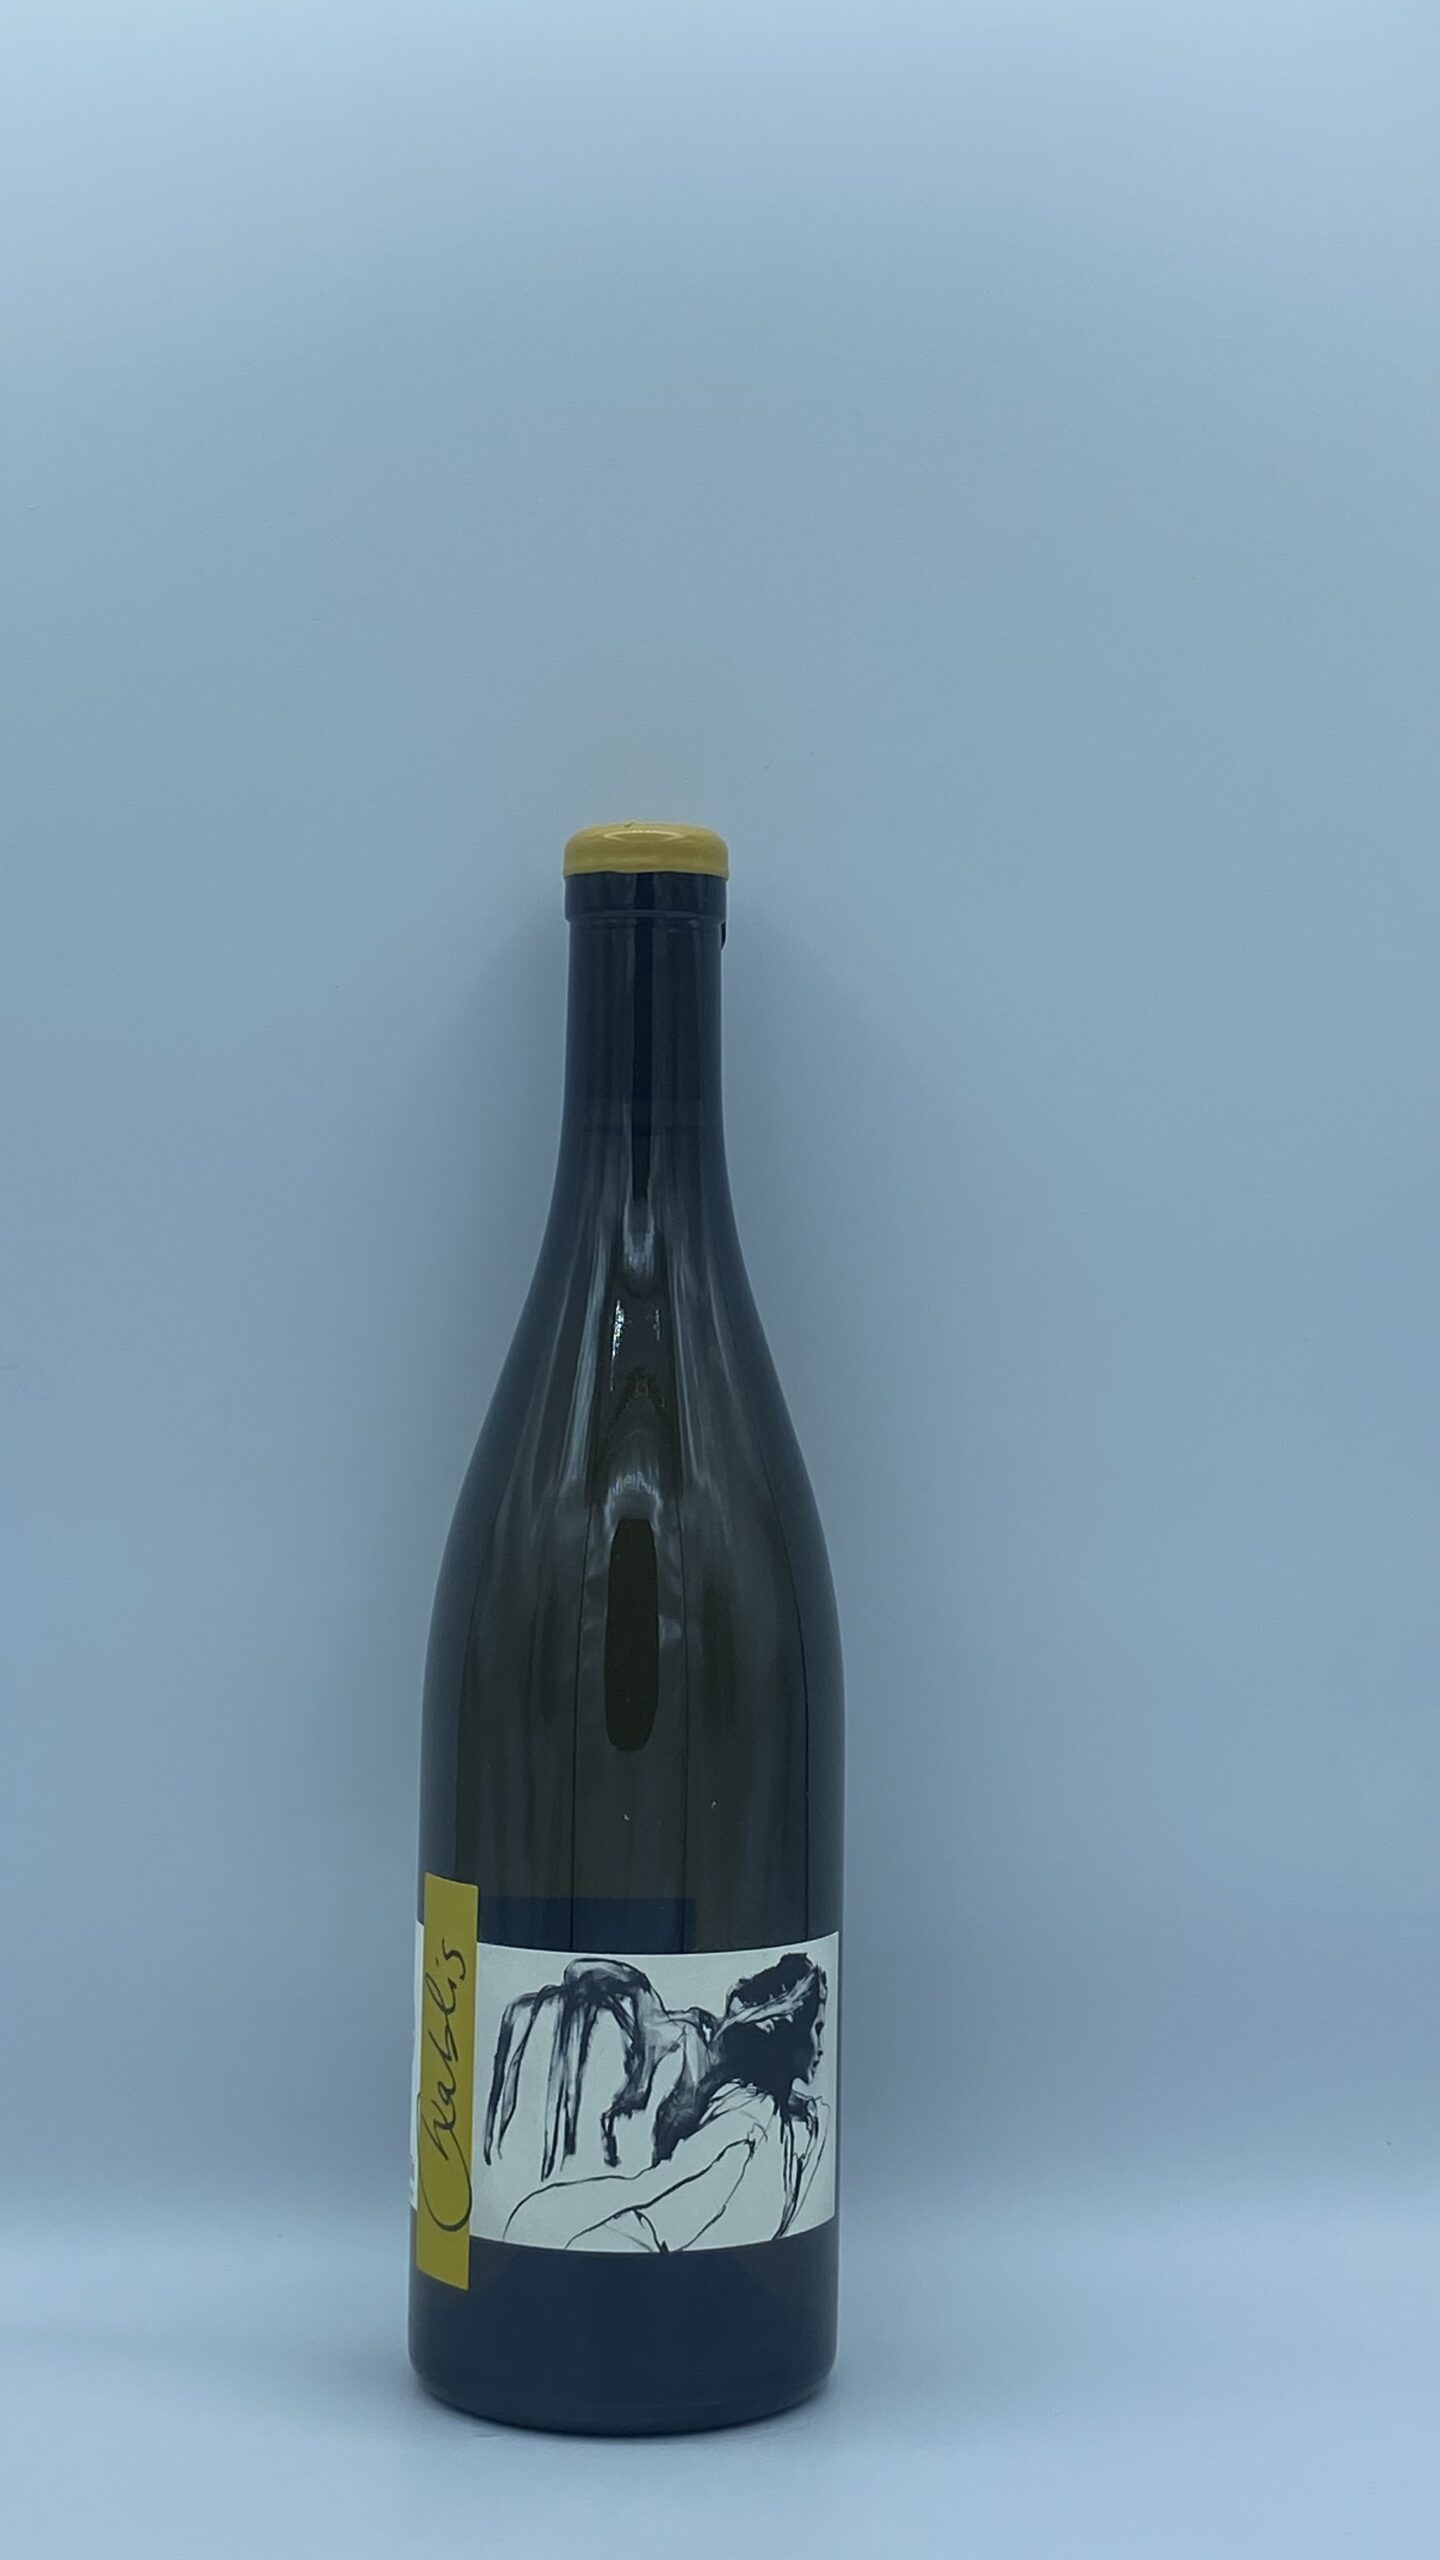 Bourgogne Chablis “Vent d’Ange” 2019 Domaine Pattes Loup